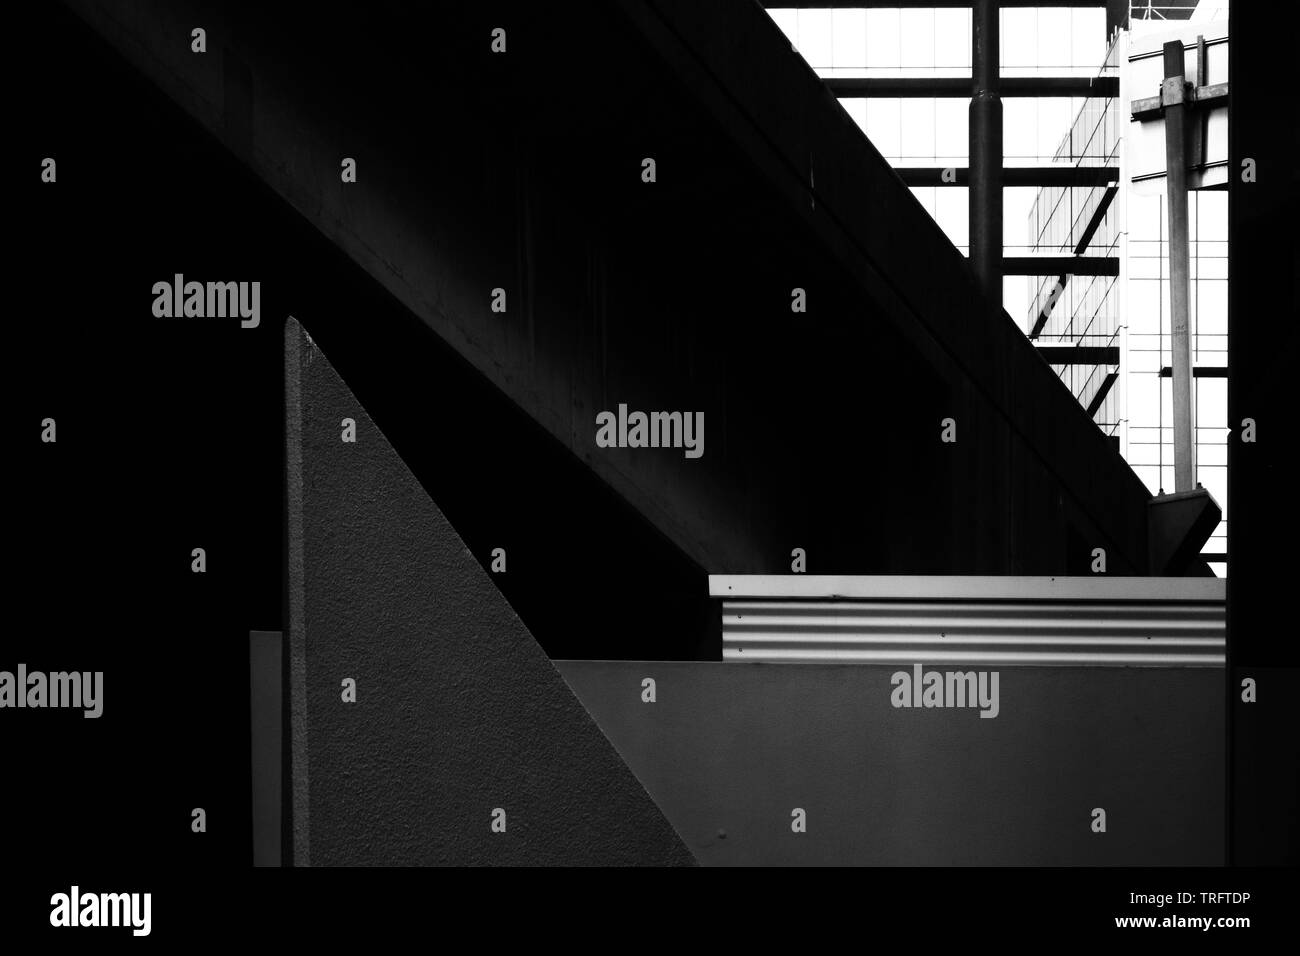 Un abstract in bianco e nero immagine grafica di dettagli architettonici, centro di Sydney. Le aree nell'immagine ideale per il testo. Foto Stock